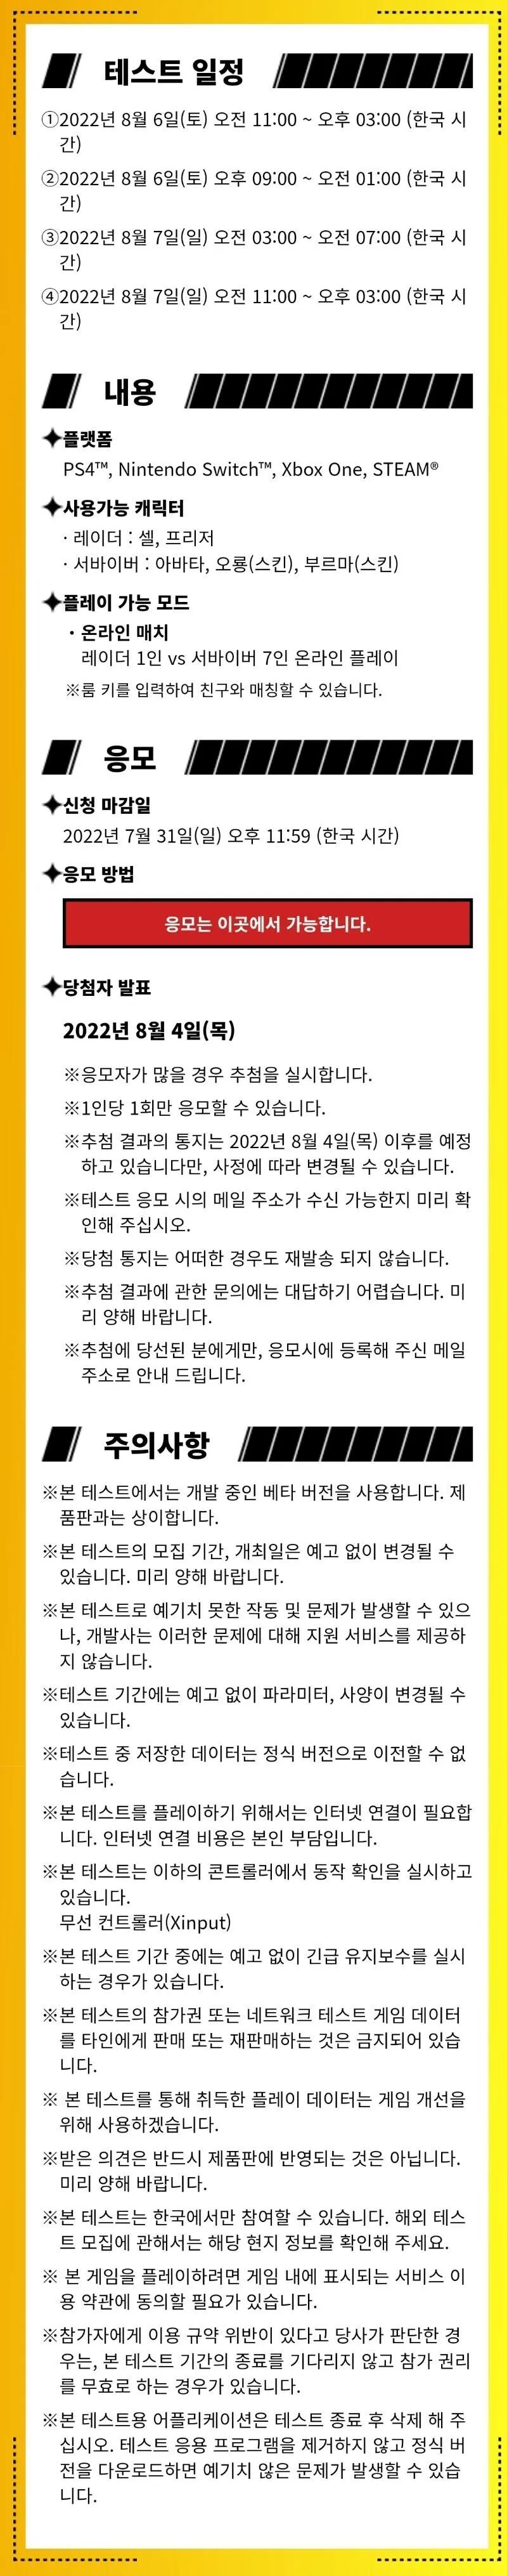 [드래곤볼신작게임] 비공개 테스트 신청 (~7/31)  엠봉 mbong.kr